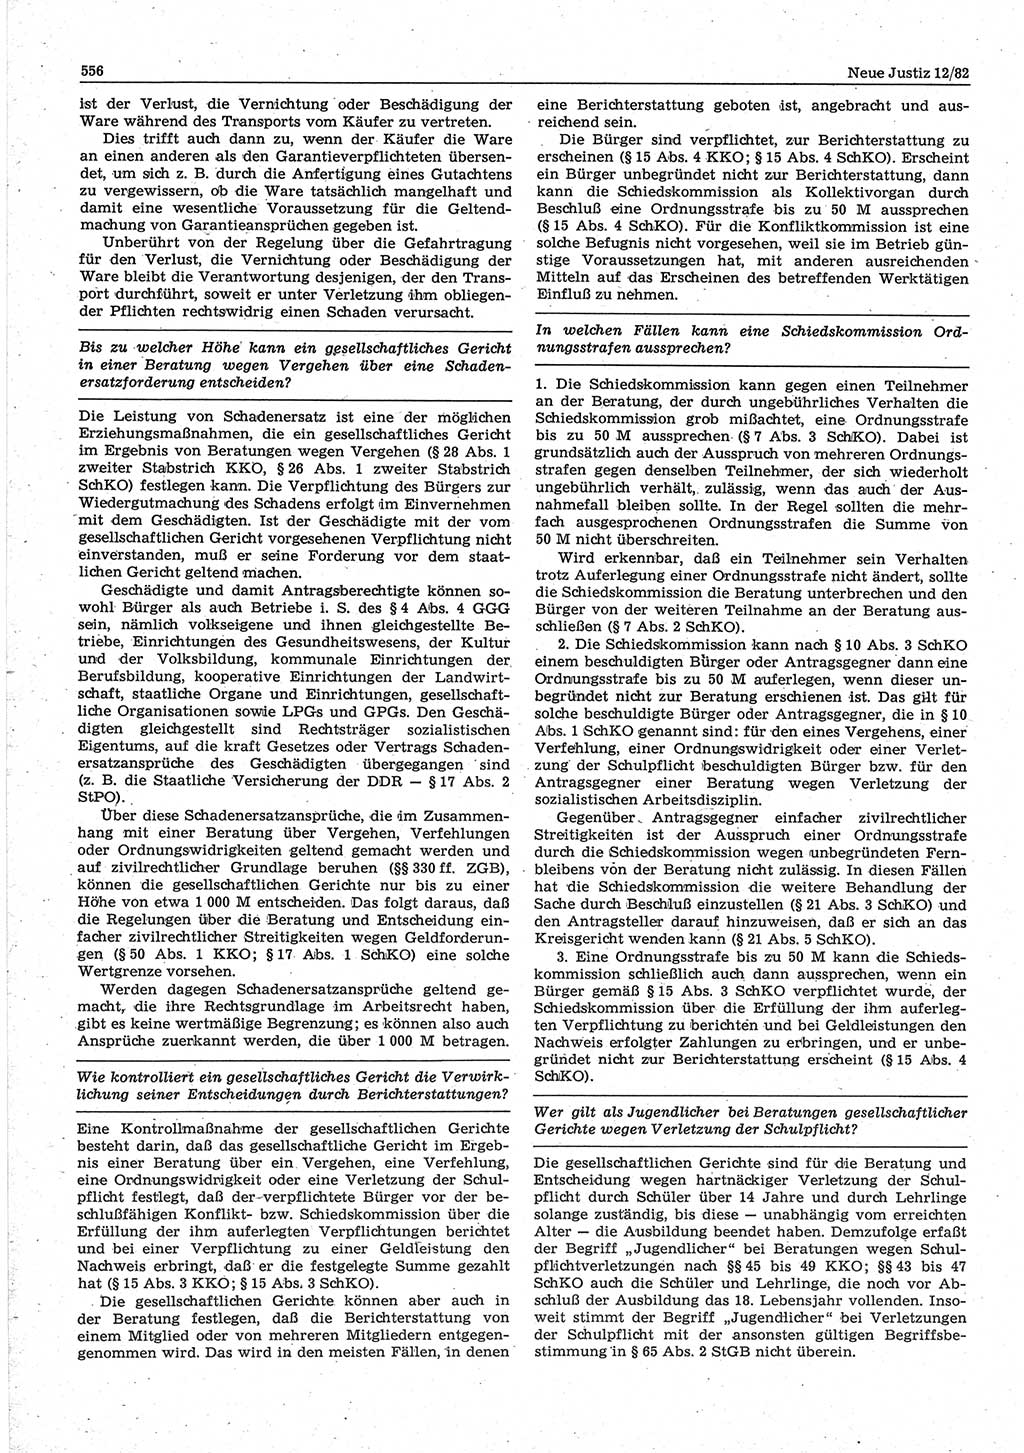 Neue Justiz (NJ), Zeitschrift für sozialistisches Recht und Gesetzlichkeit [Deutsche Demokratische Republik (DDR)], 36. Jahrgang 1982, Seite 556 (NJ DDR 1982, S. 556)